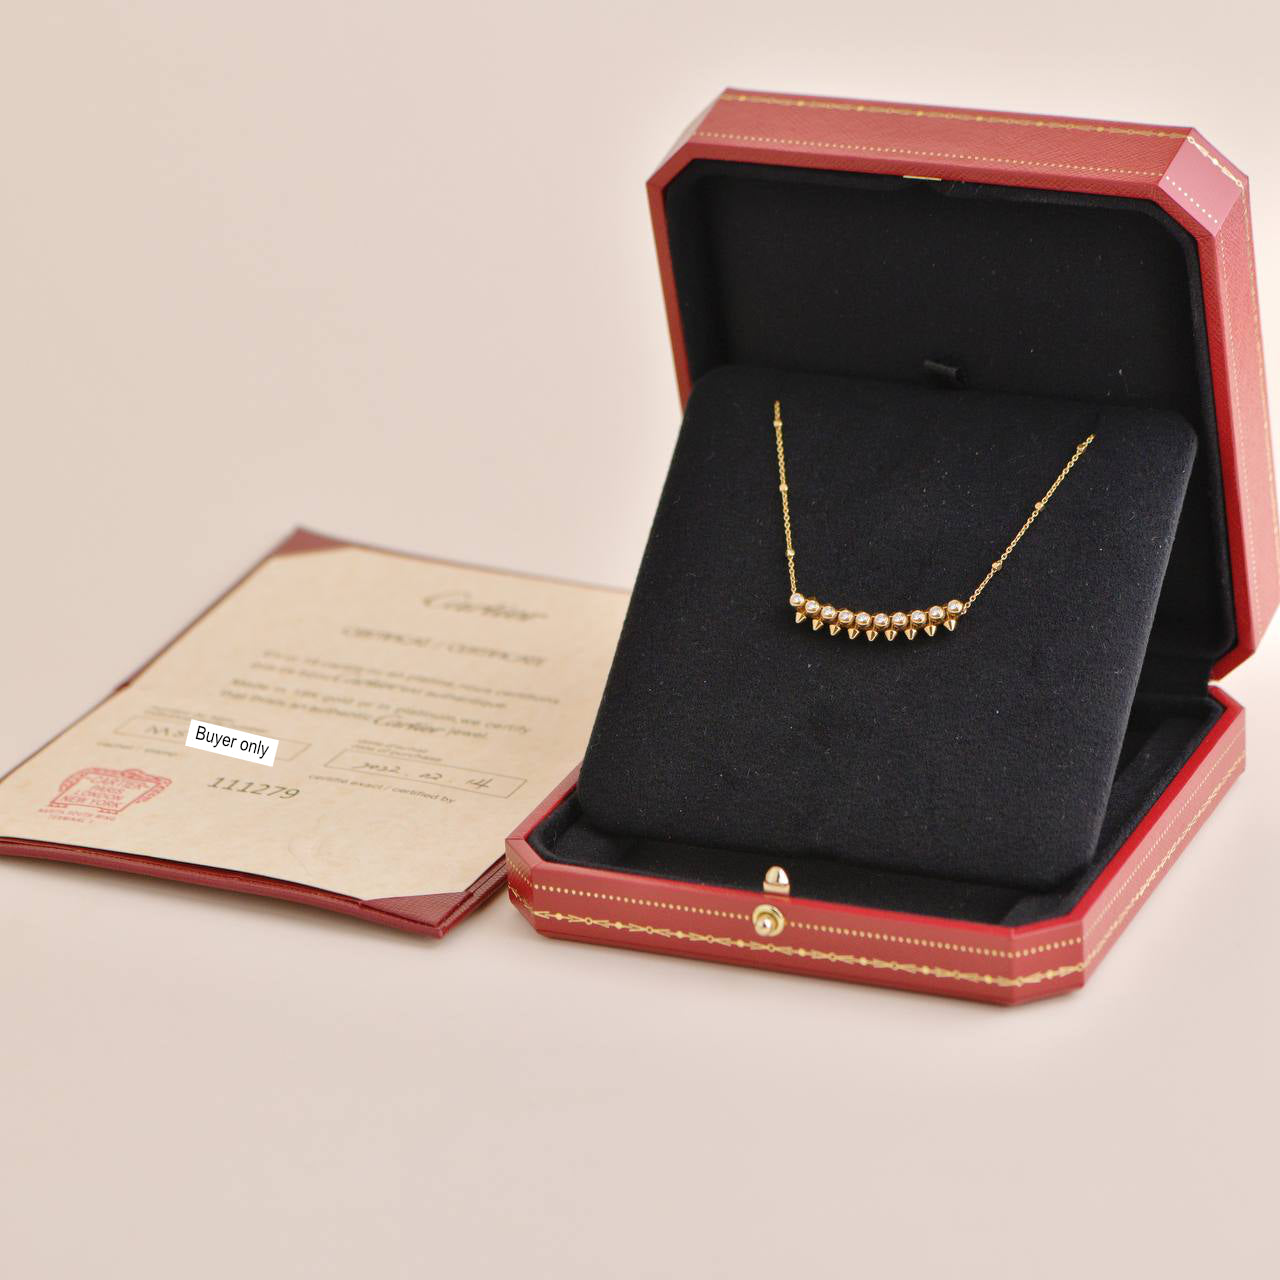 Cartier Rose Gold and Onyx Clash de Cartier Pendant Necklace (80cm) |  MILANSTYLE.COM